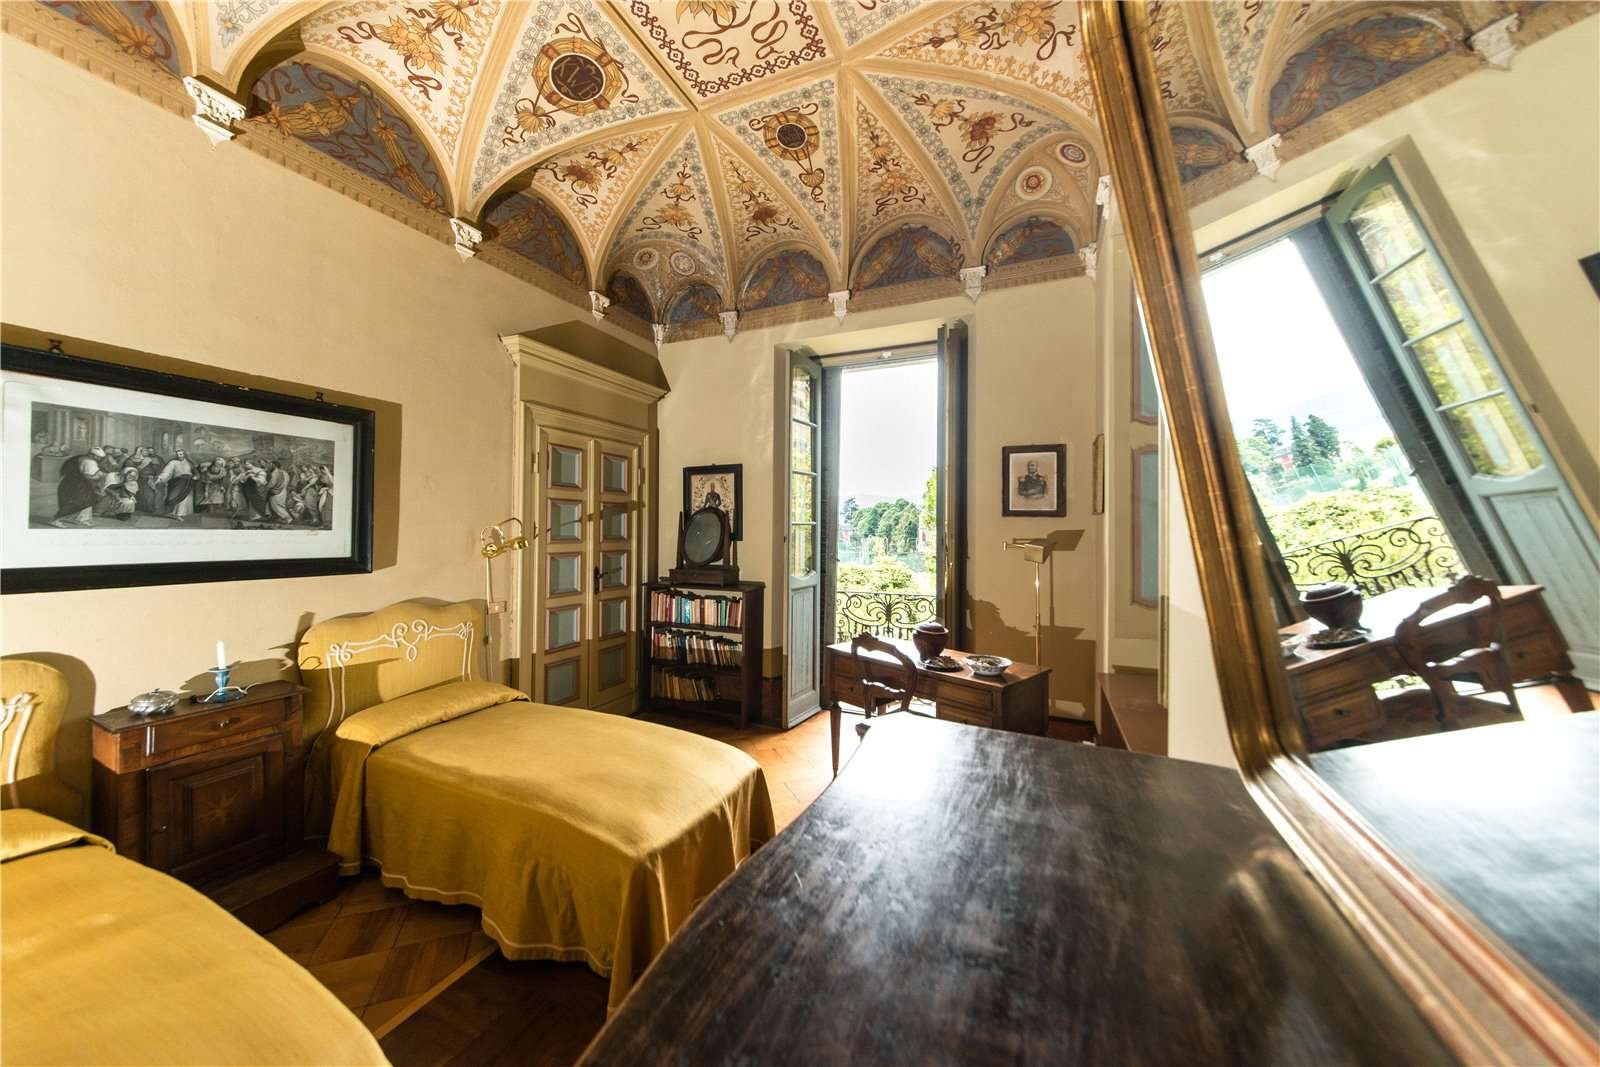 Francis YorkVilla L'Eremitaggio: Historic Villa On Lake Maggiore 18.jpg